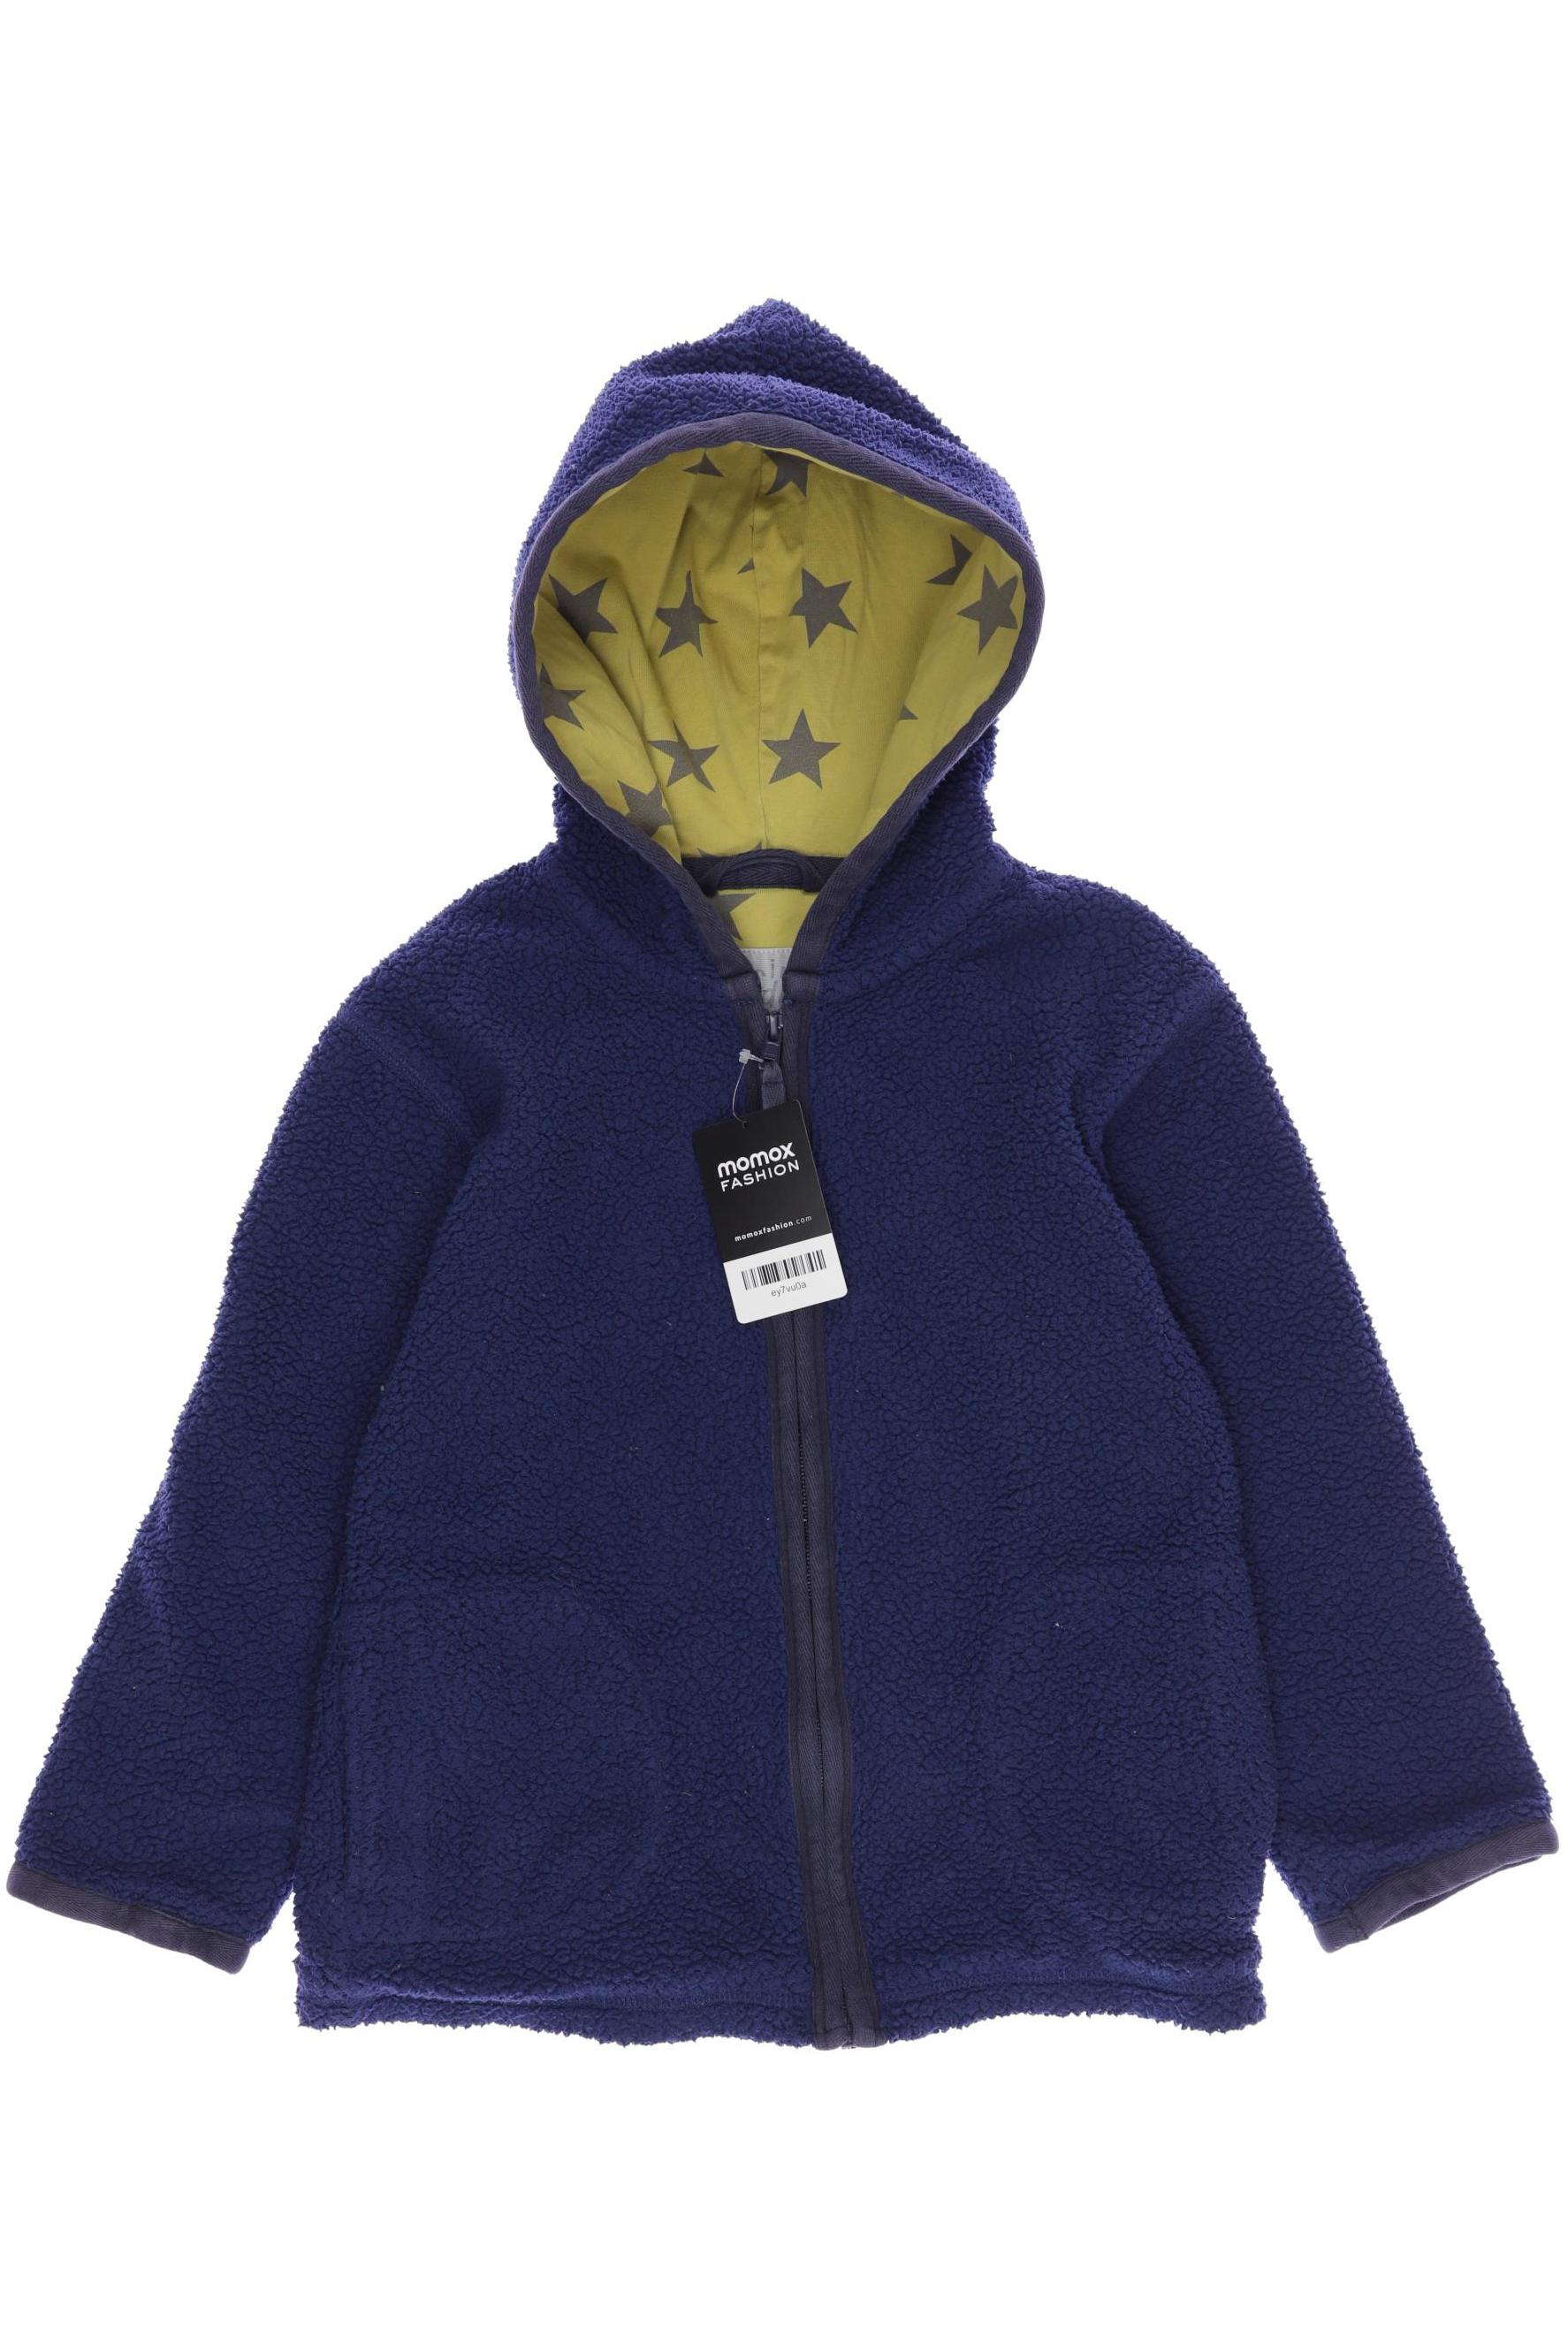 Mini Boden Jungen Hoodies & Sweater, marineblau von Mini Boden